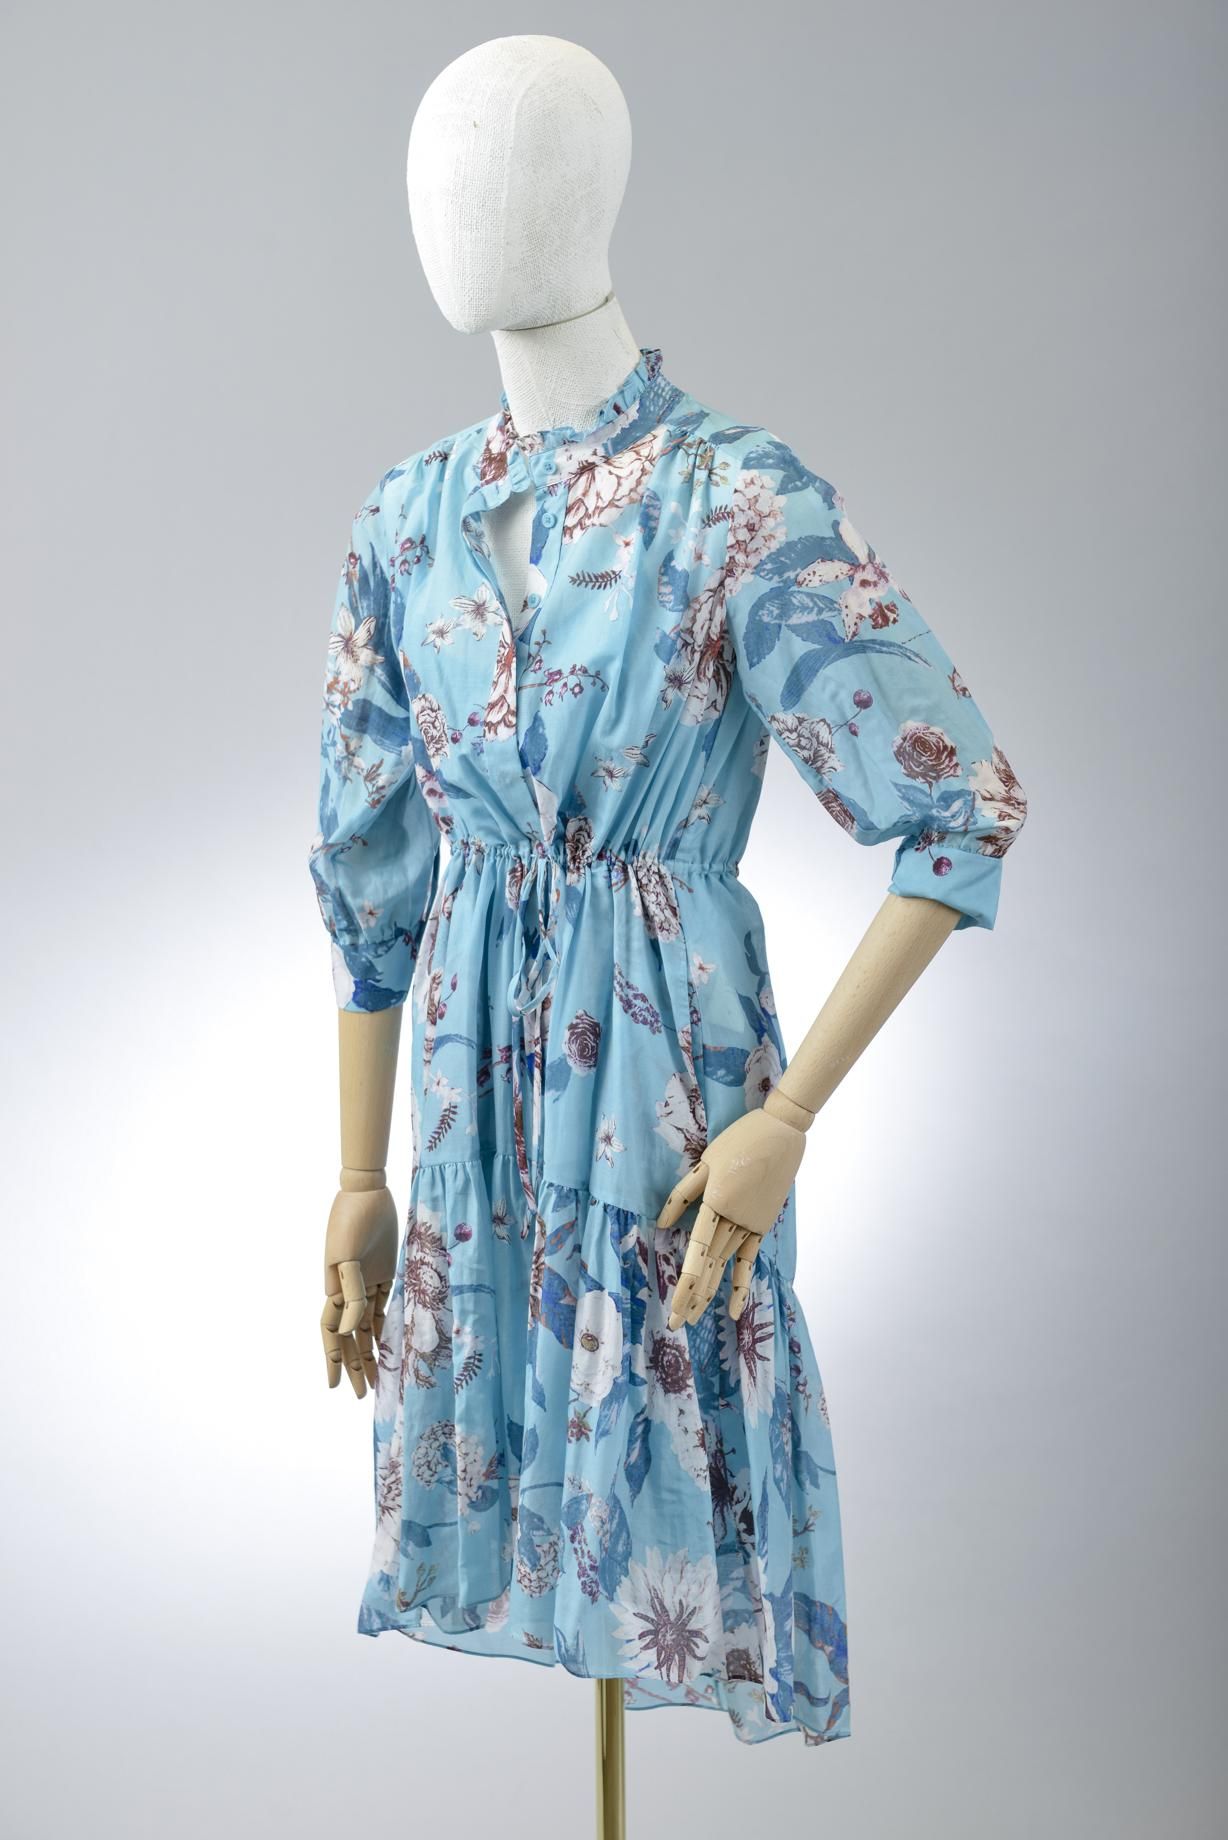 Null *尺寸XS DVF - Diane Von Fürstenberg

套装包括。

宽松的丝棉纱中长连衣裙，"DVF Davey "型号，"丁香雨 "&hellip;